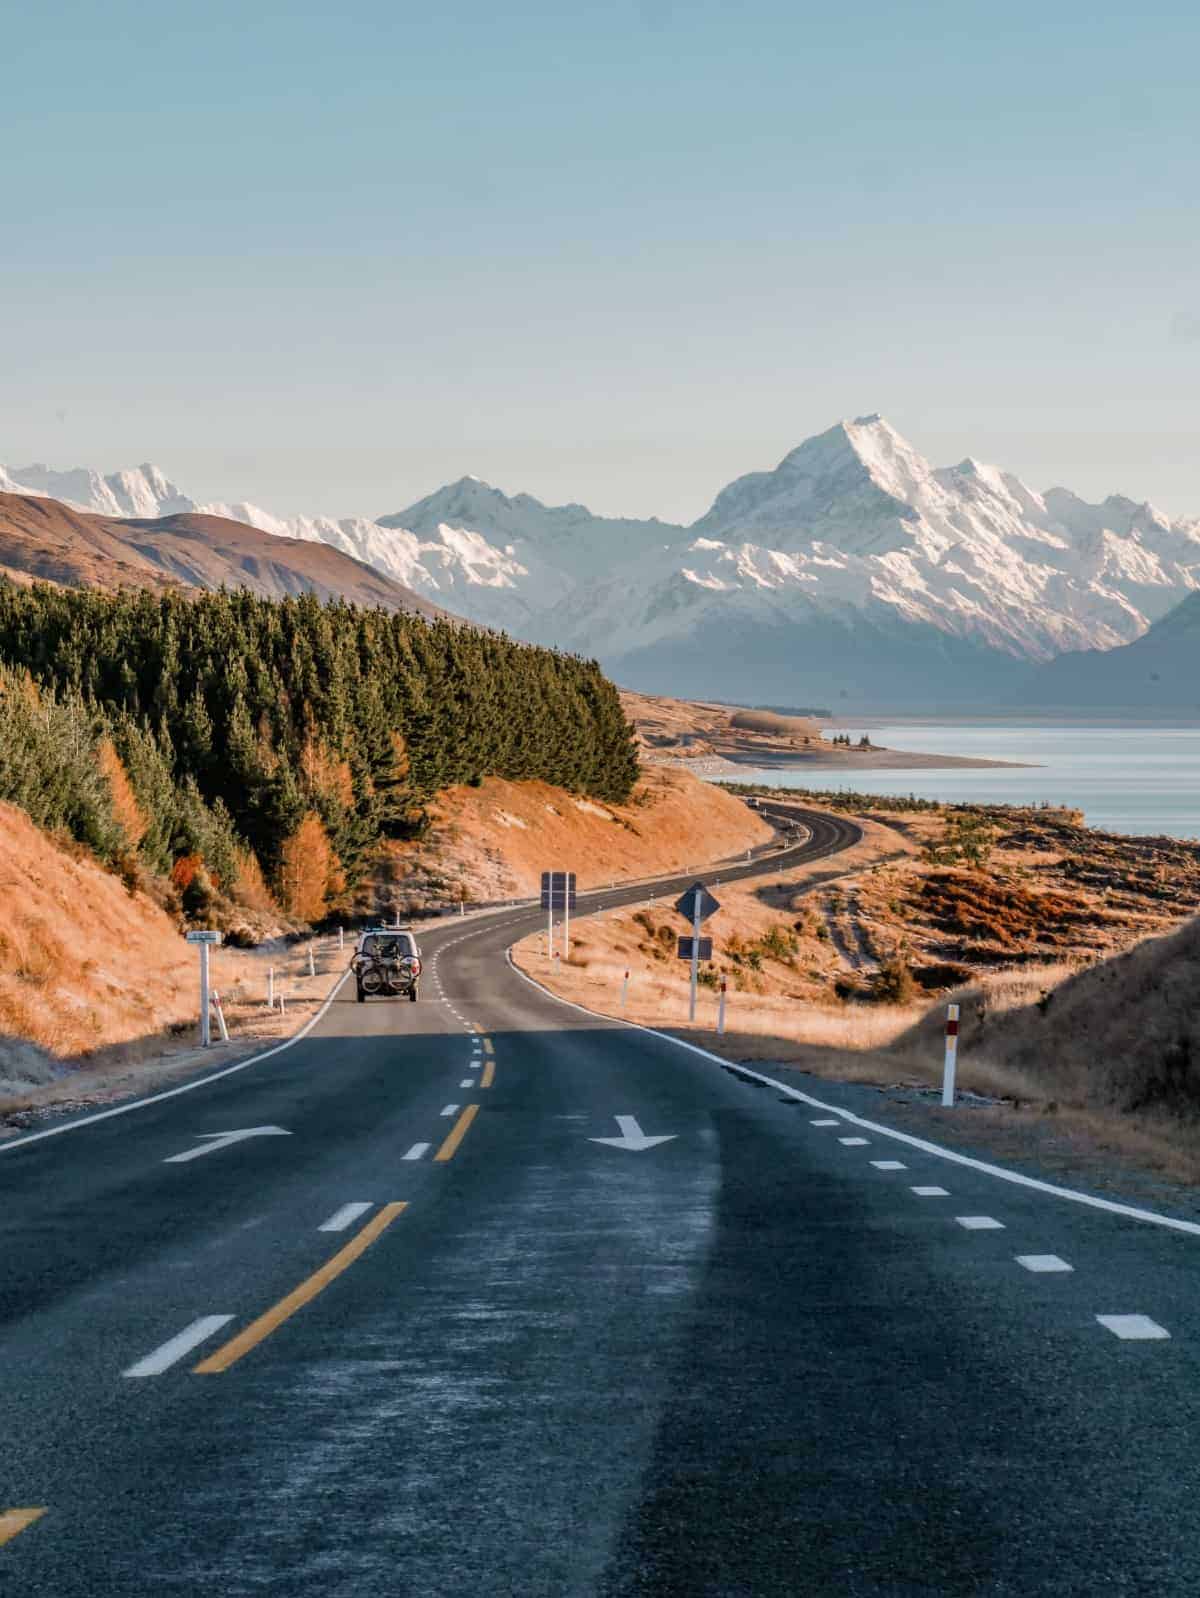 Straße in neuseeländischer Landschaft mit dem Mount Cook im Hintergrund